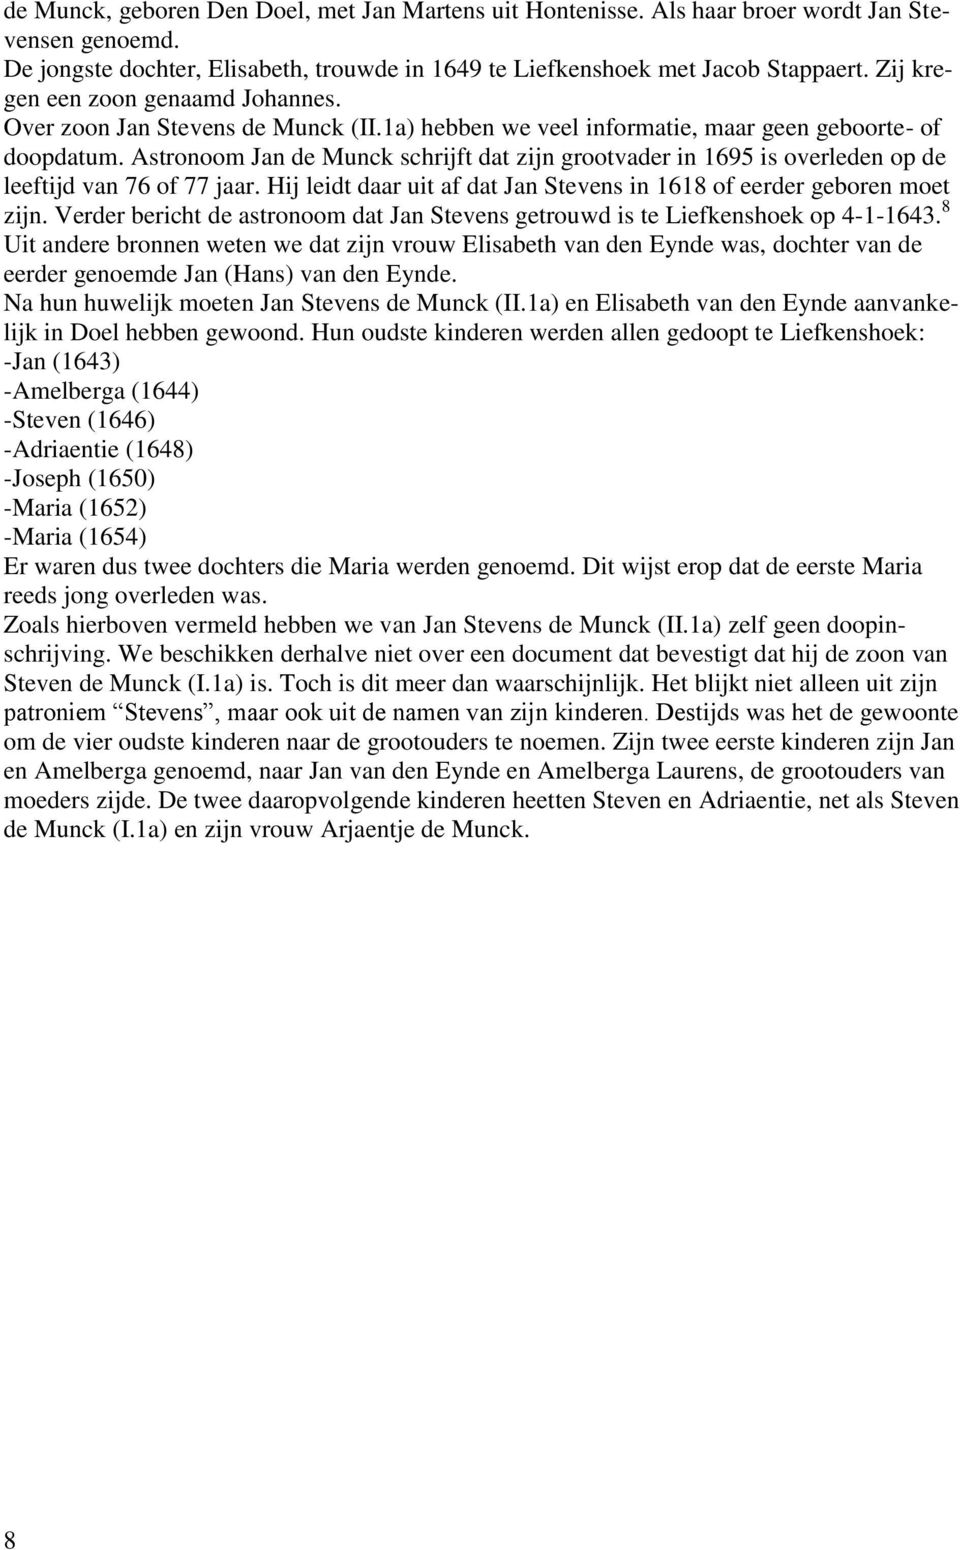 Astronoom Jan de Munck schrijft dat zijn grootvader in 1695 is overleden op de leeftijd van 76 of 77 jaar. Hij leidt daar uit af dat Jan Stevens in 1618 of eerder geboren moet zijn.